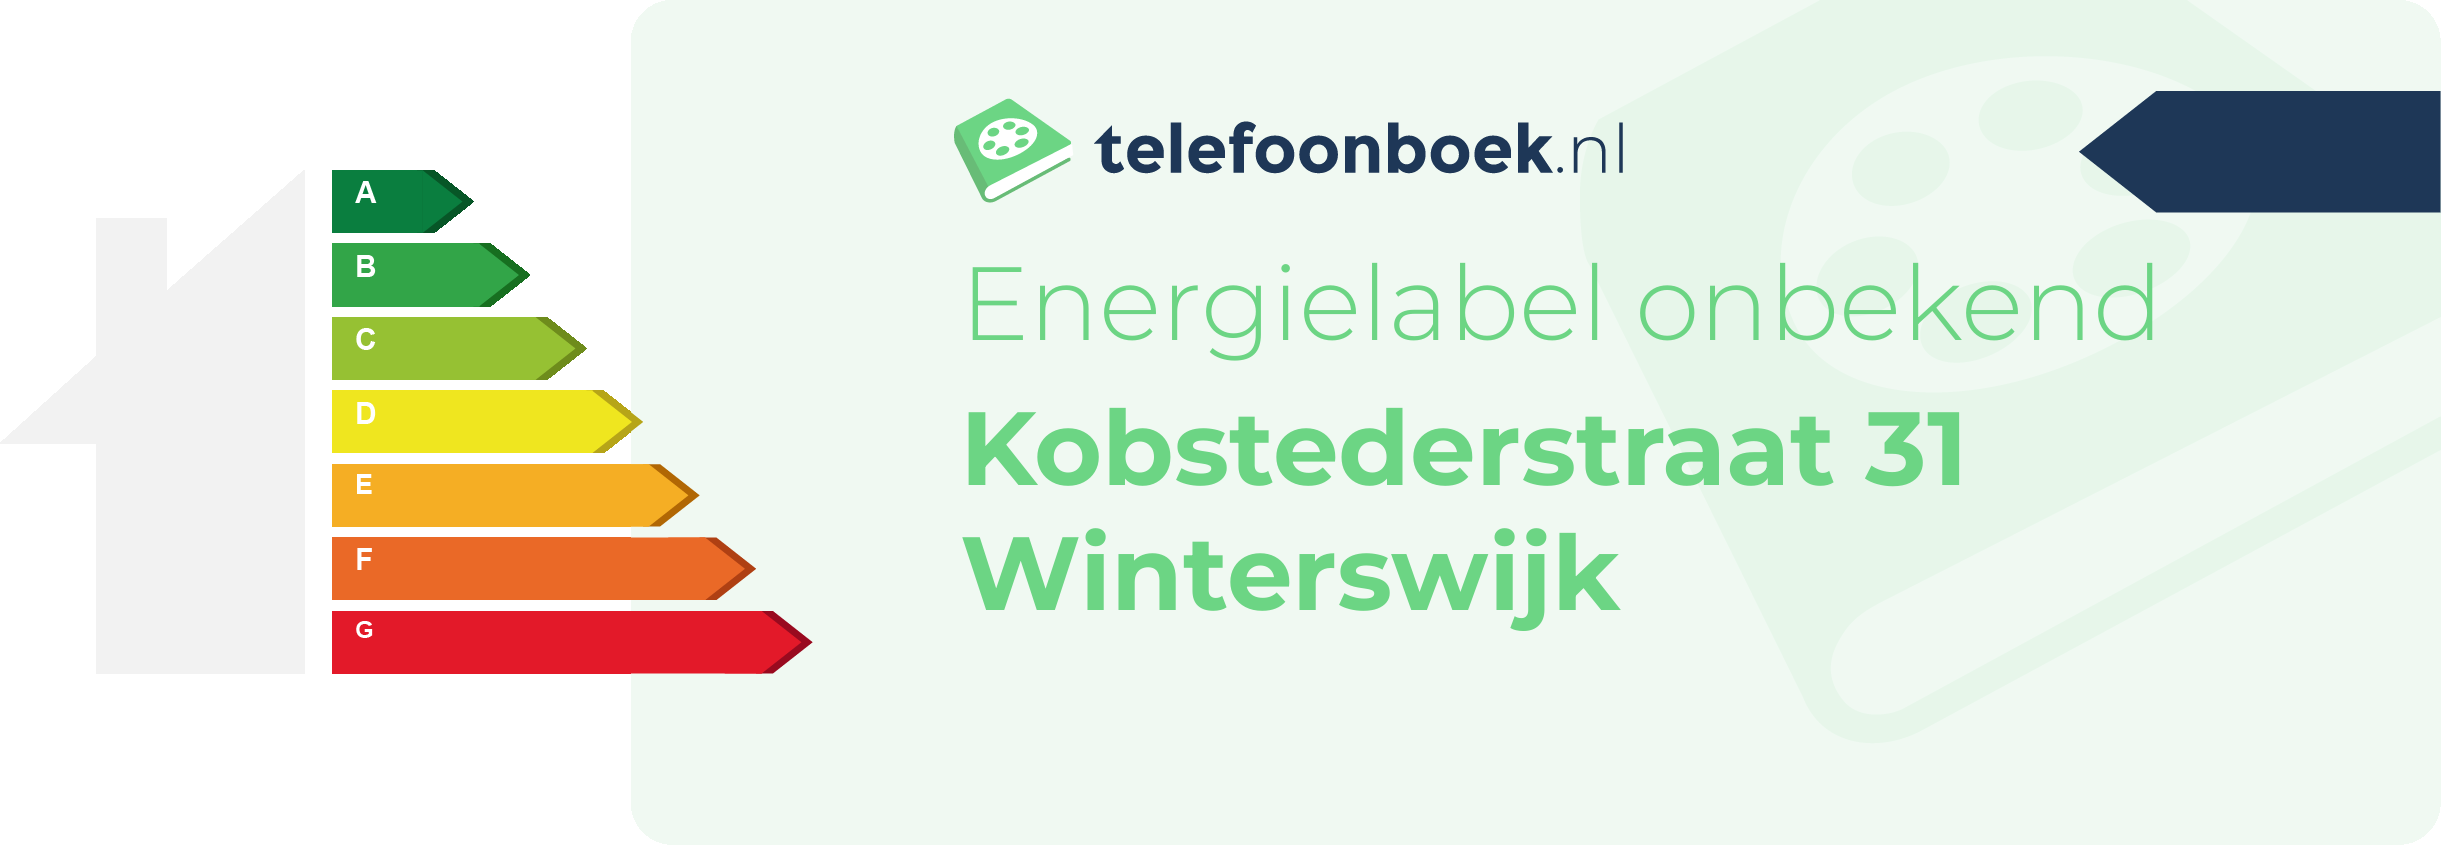 Energielabel Kobstederstraat 31 Winterswijk